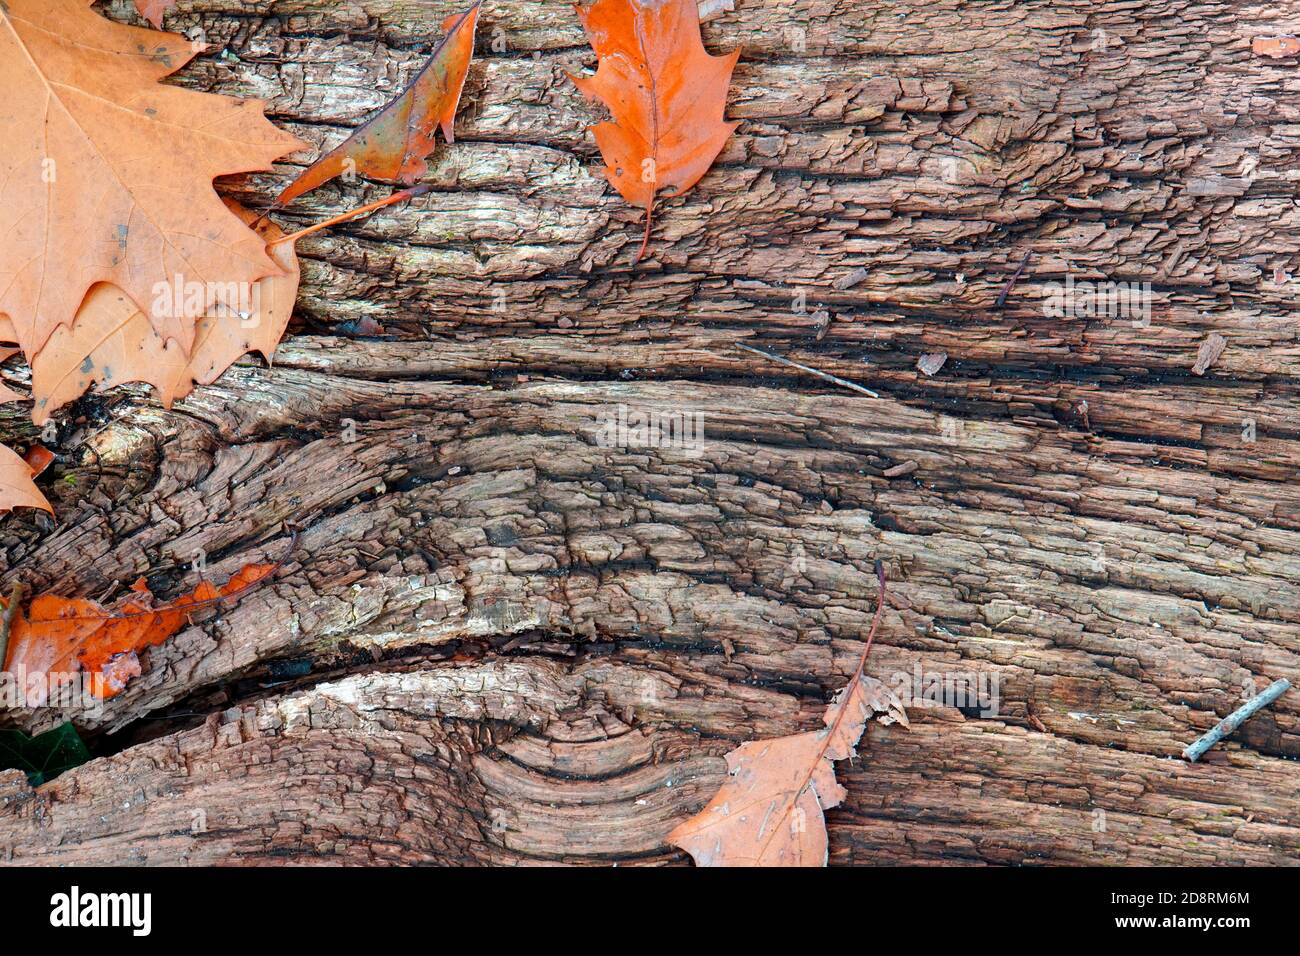 Ein Stück altes Holz mit einigen Eichenblättern, die darauf gefallen sind. Stockfoto